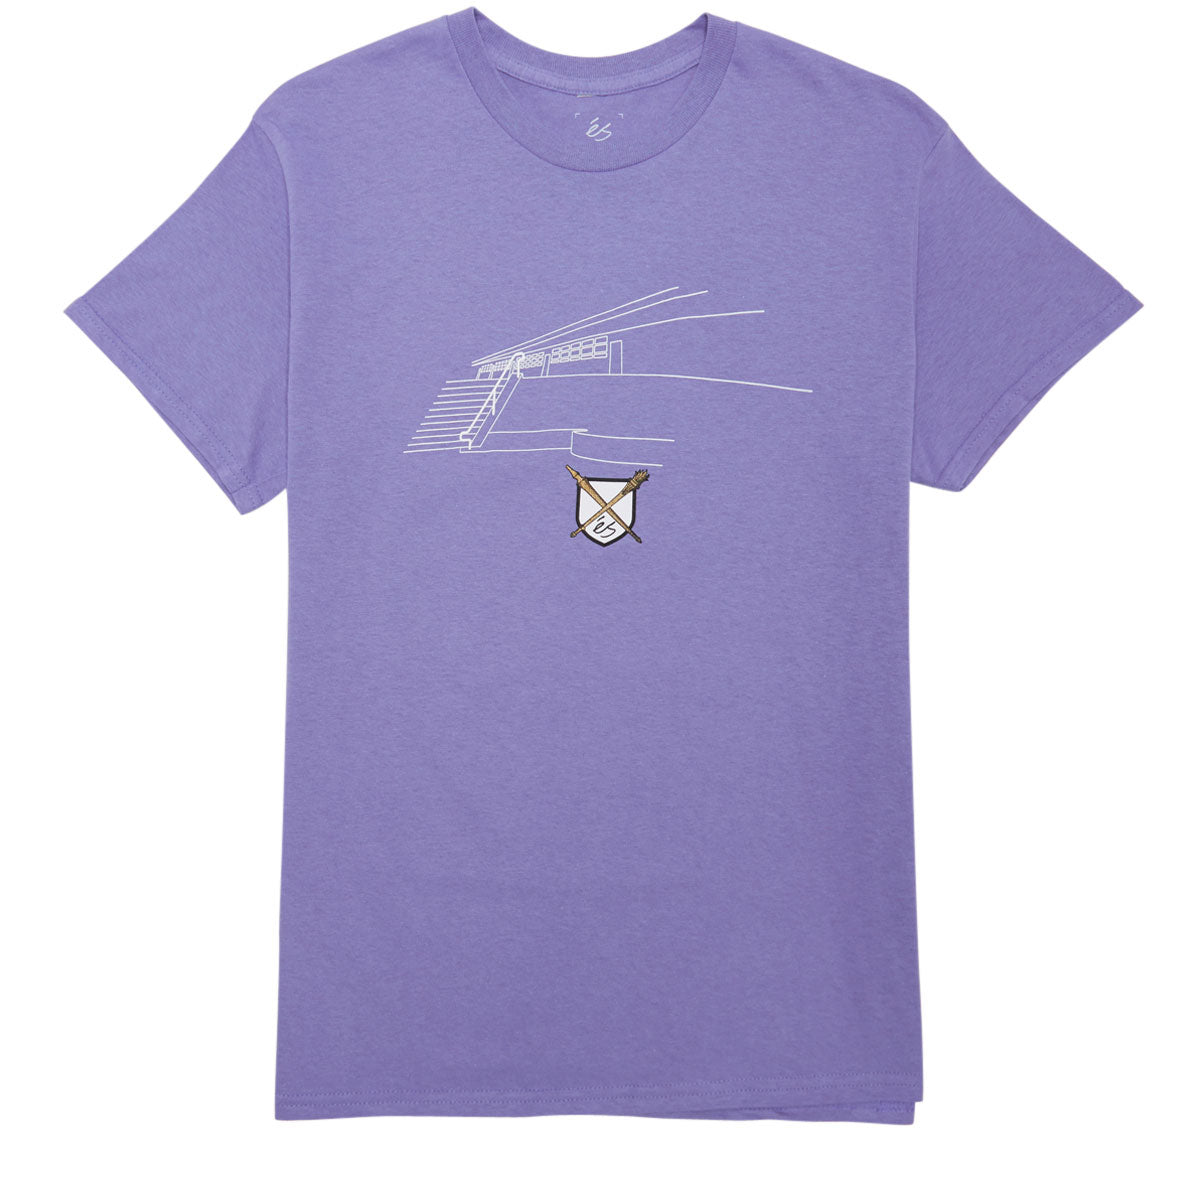 eS Carlsbad T-Shirt - Violet image 1